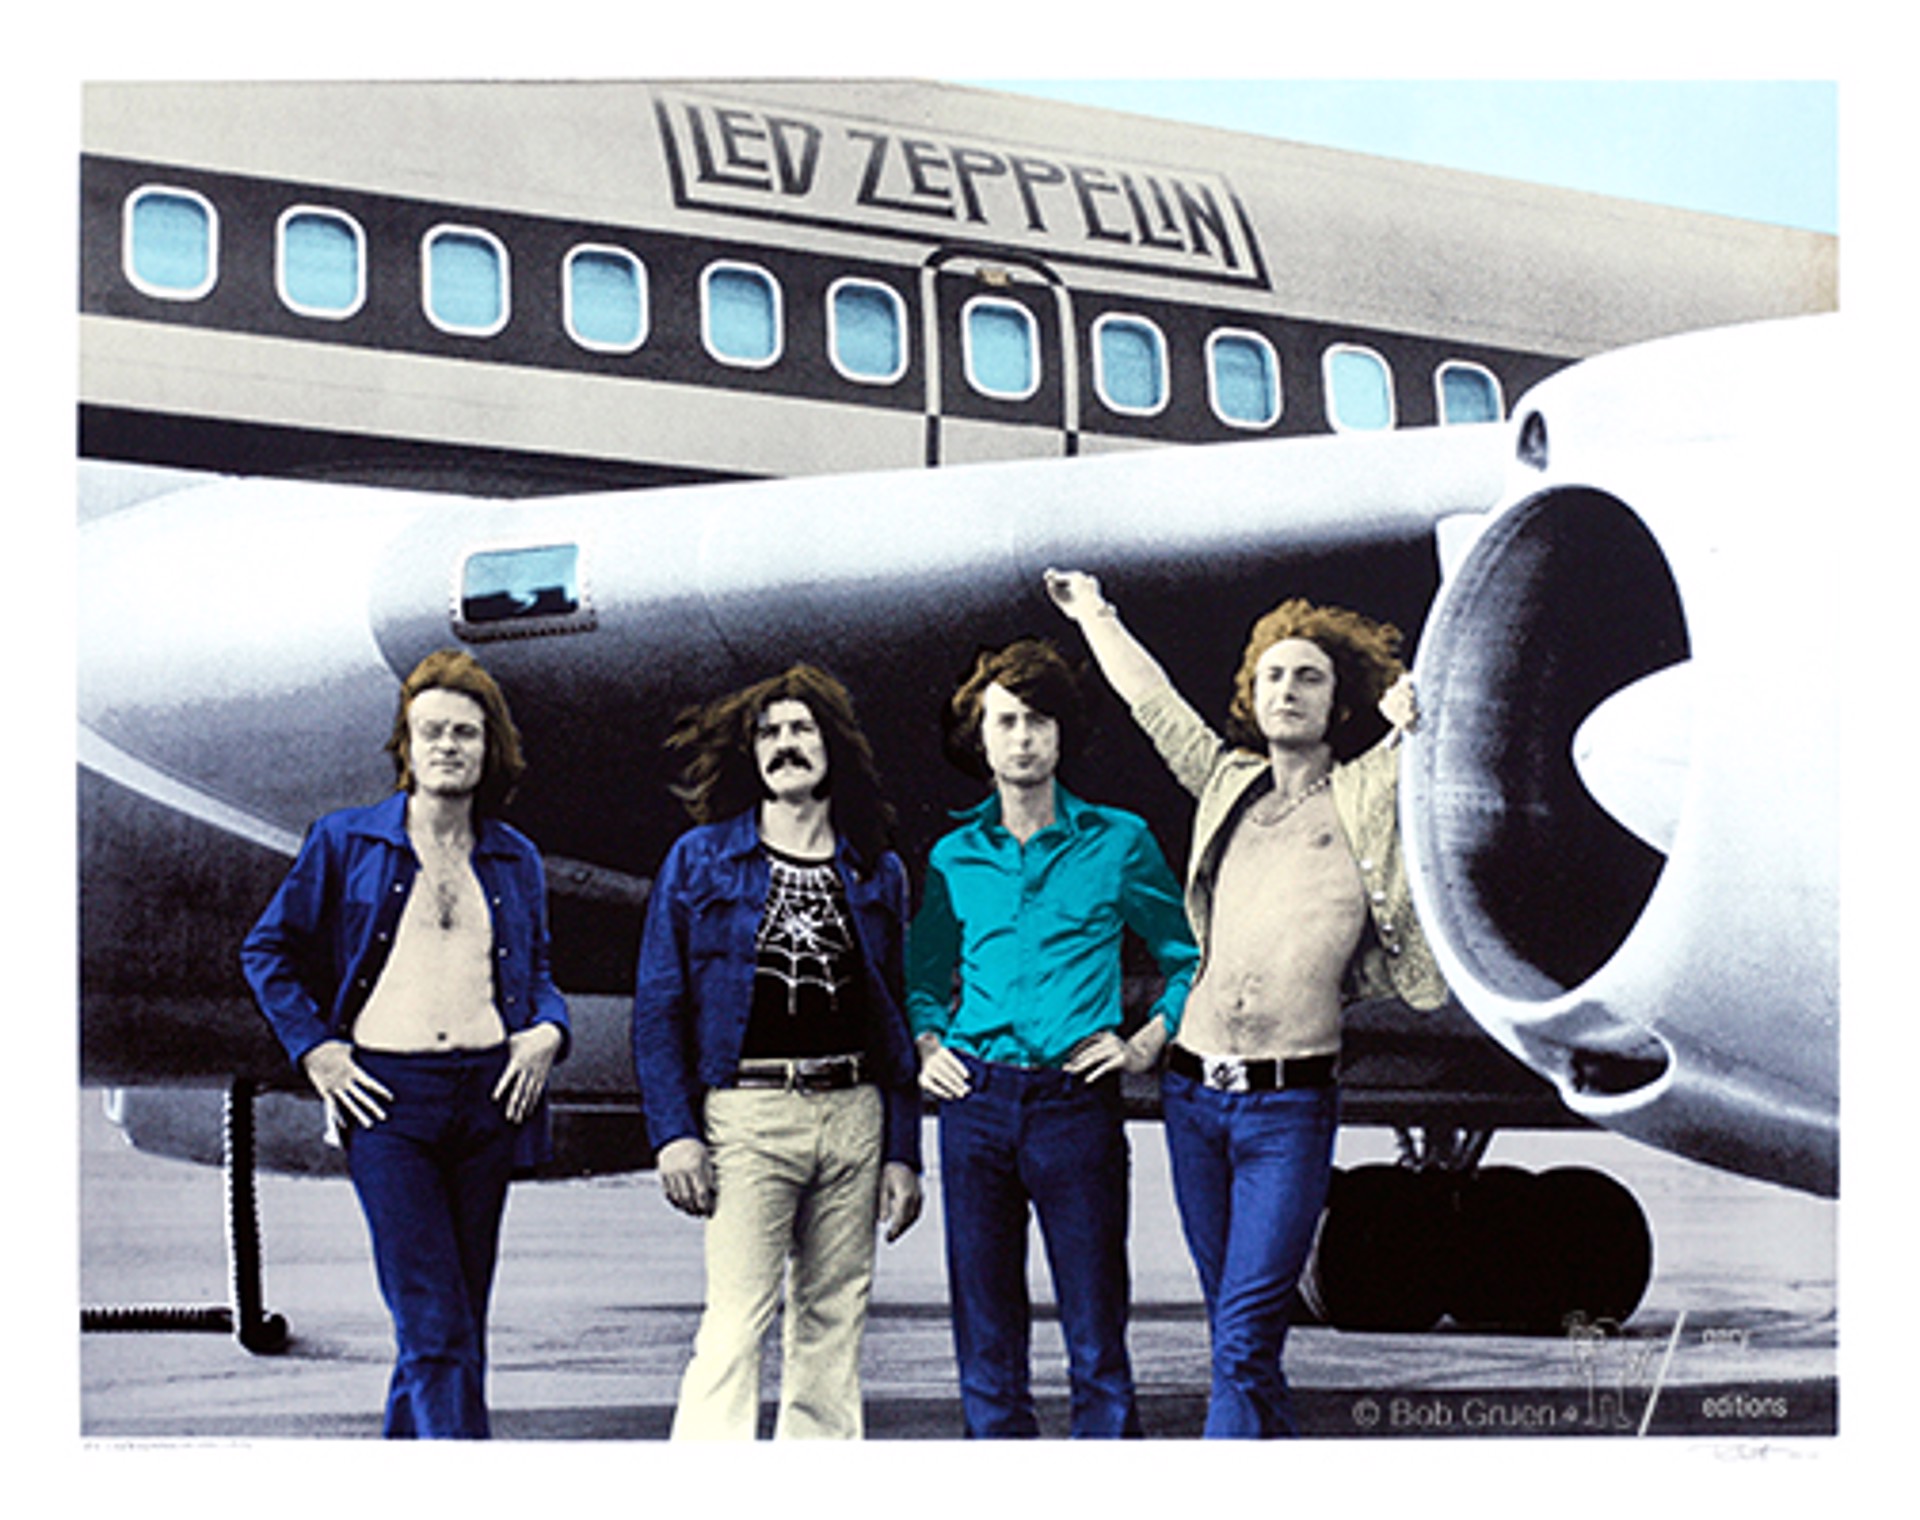 Led Zeppelin, NYC, 1973 by Bob Gruen